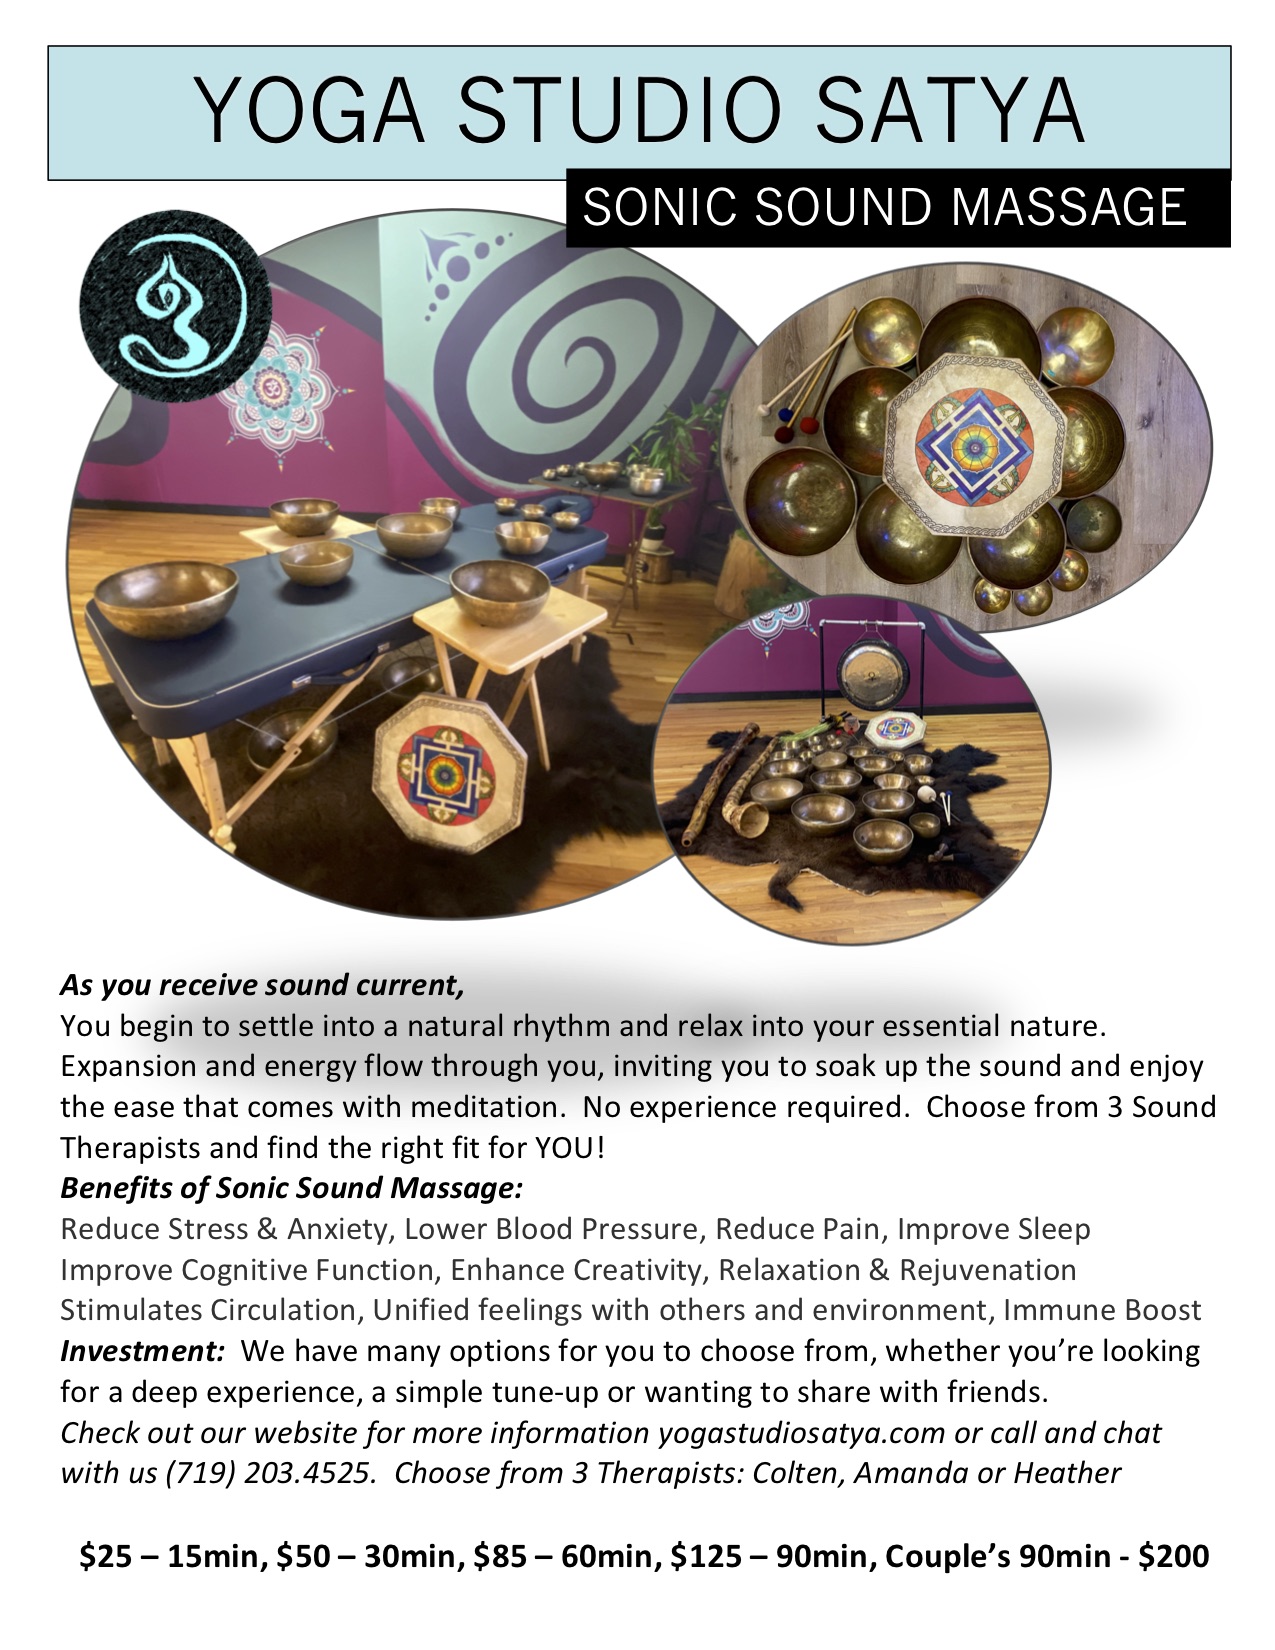 Sonic Sound Massage